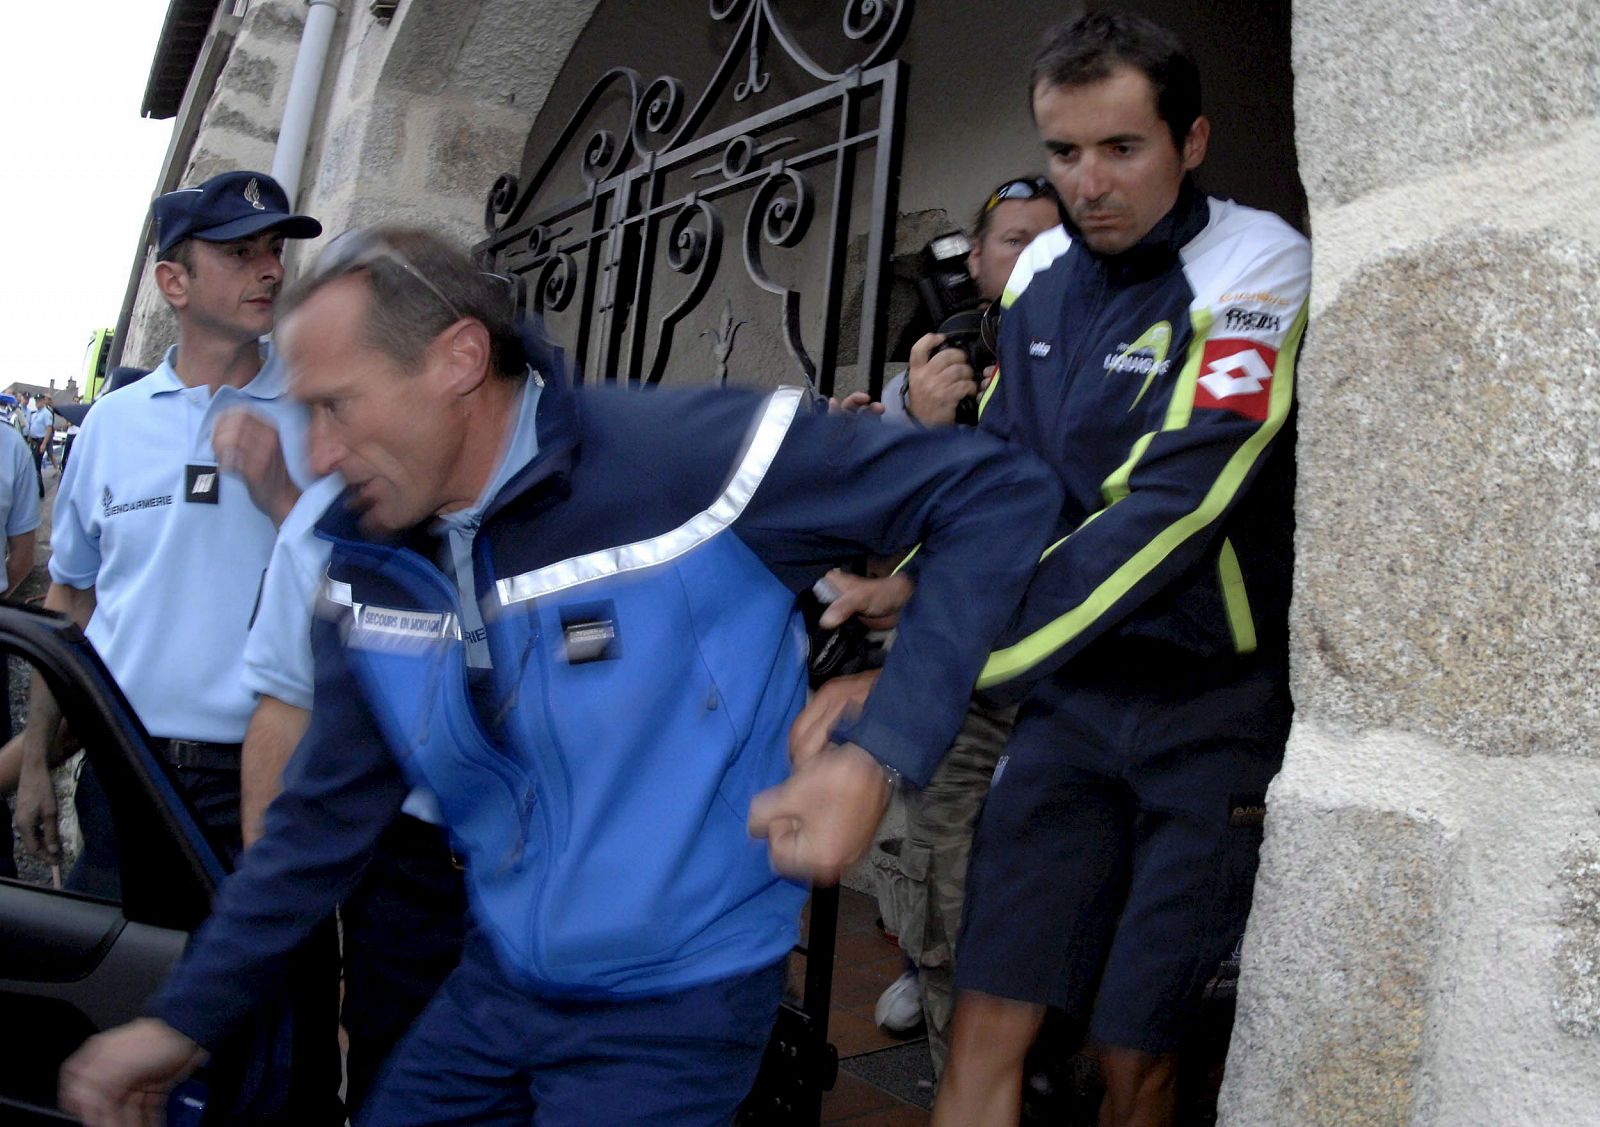 Manuel Beltrán ha sido el primer positivo por EPO que se encuentra en el Tour de Francia 2008.